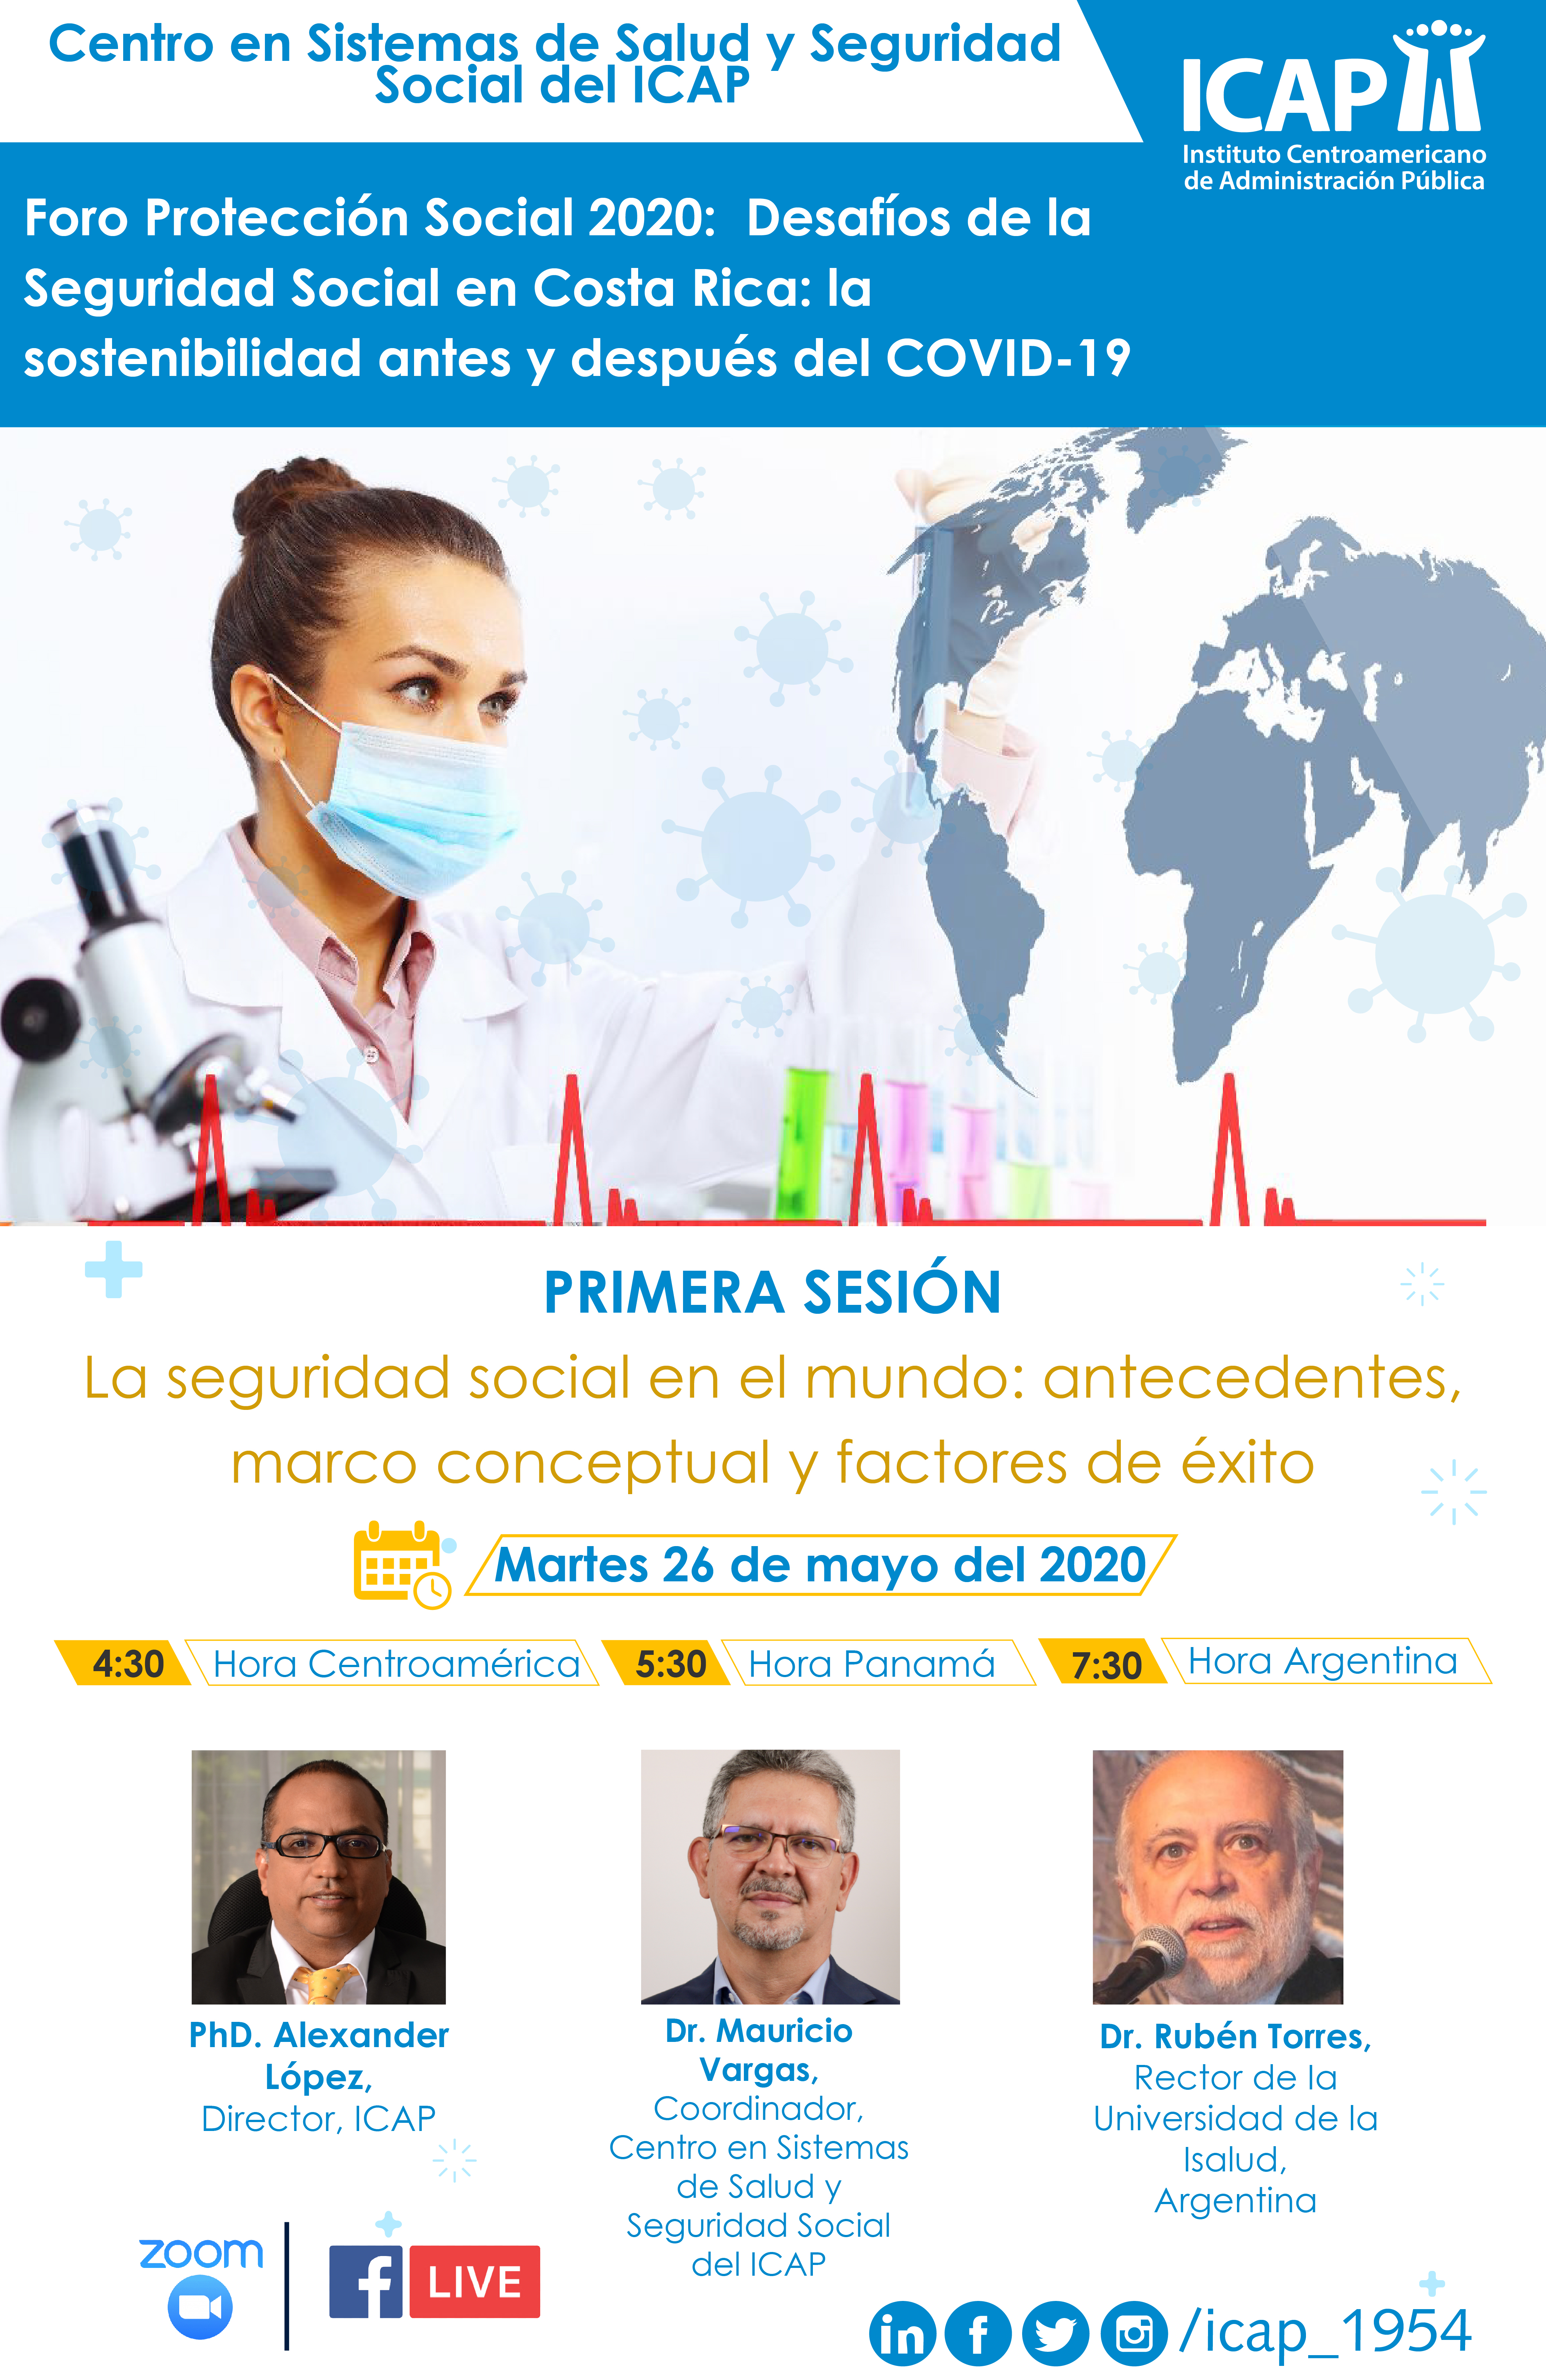 Una invitación a reflexionar sobre los ¿desafíos y retos de la Seguridad Social en Costa Rica en el escenario COVID-19?